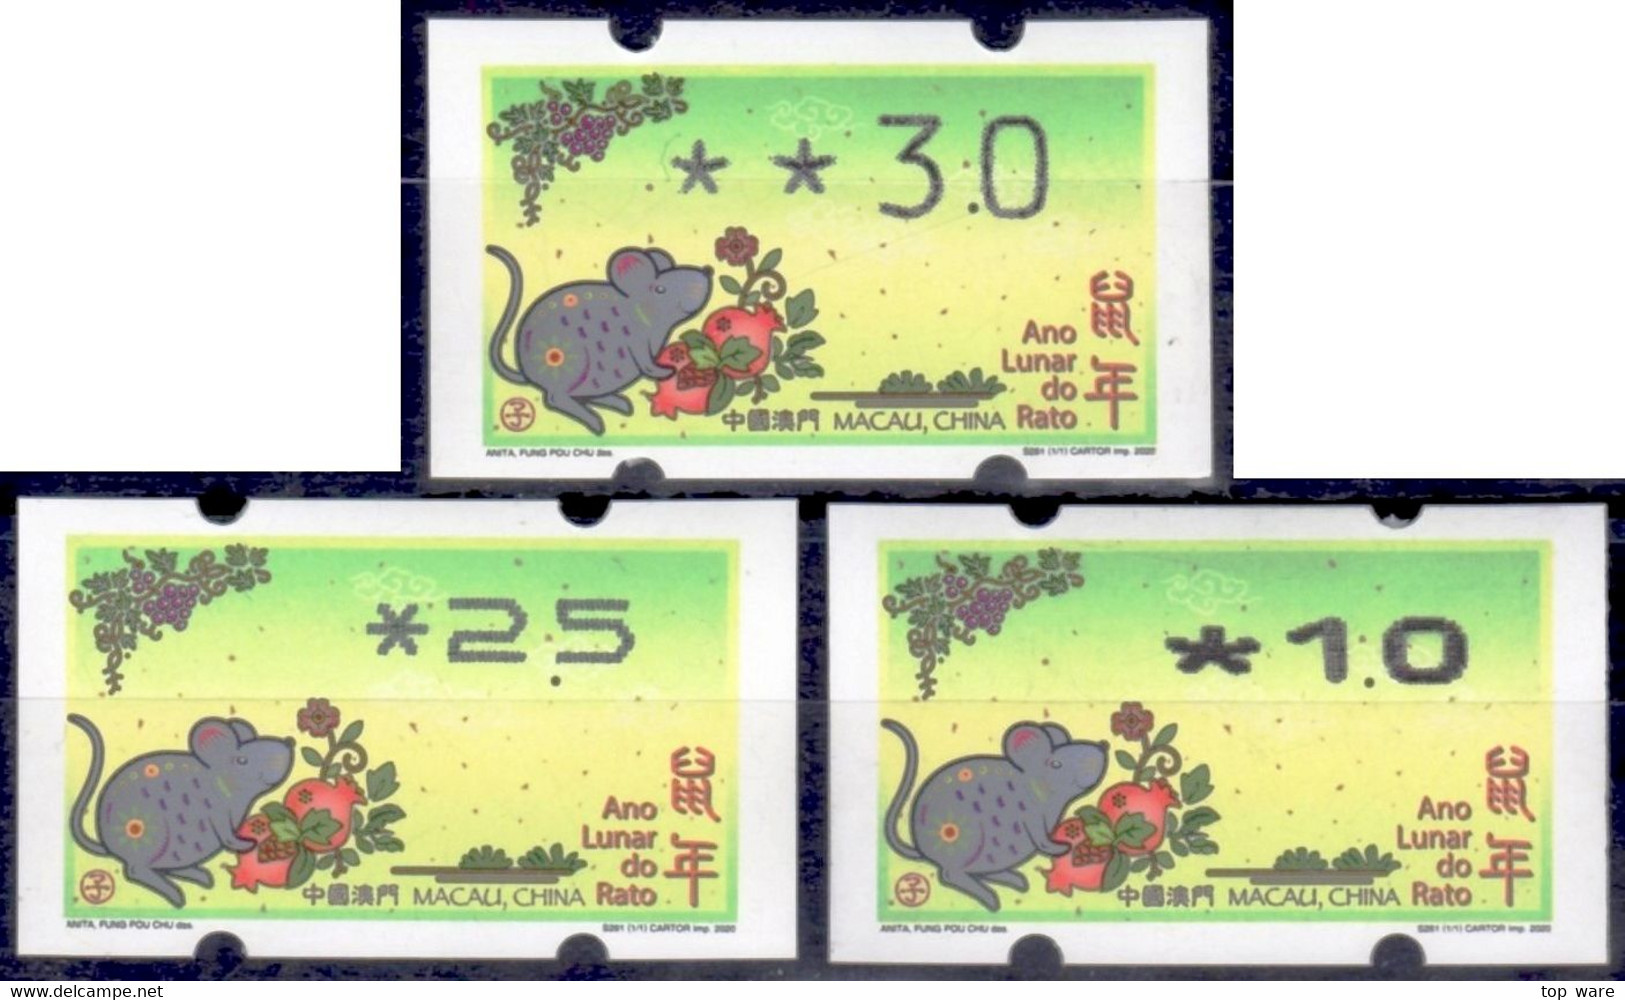 2020 Chine Macao Macau ATM Stamps Année Du Souris / Tous Types D'imprimantes Klussendorf Nagler Automatenmarken - Distributors